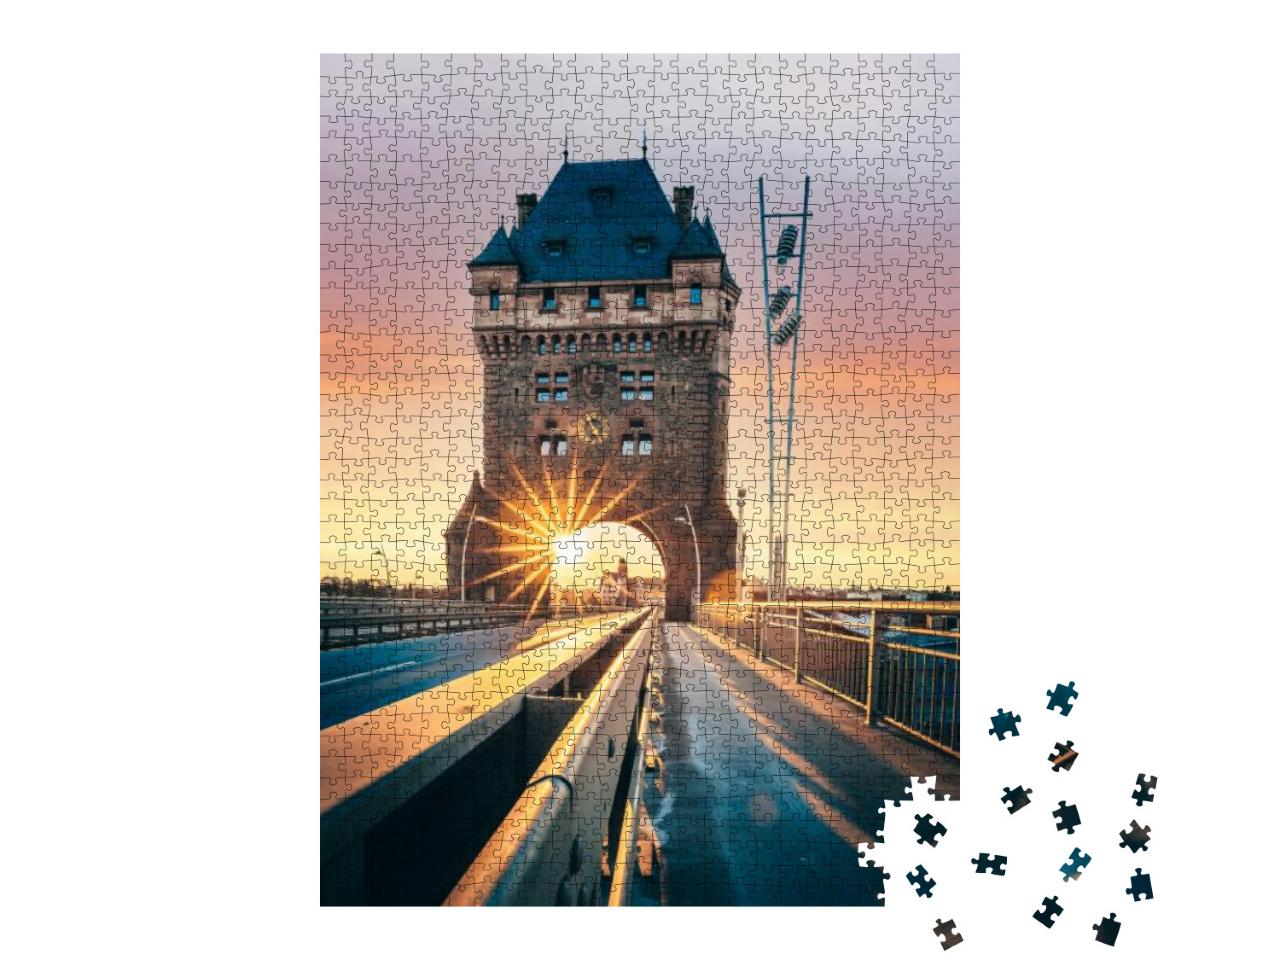 Puzzle 1000 Teile „Worms mit der berühmten Nibelungenbrücke, Deutschland“